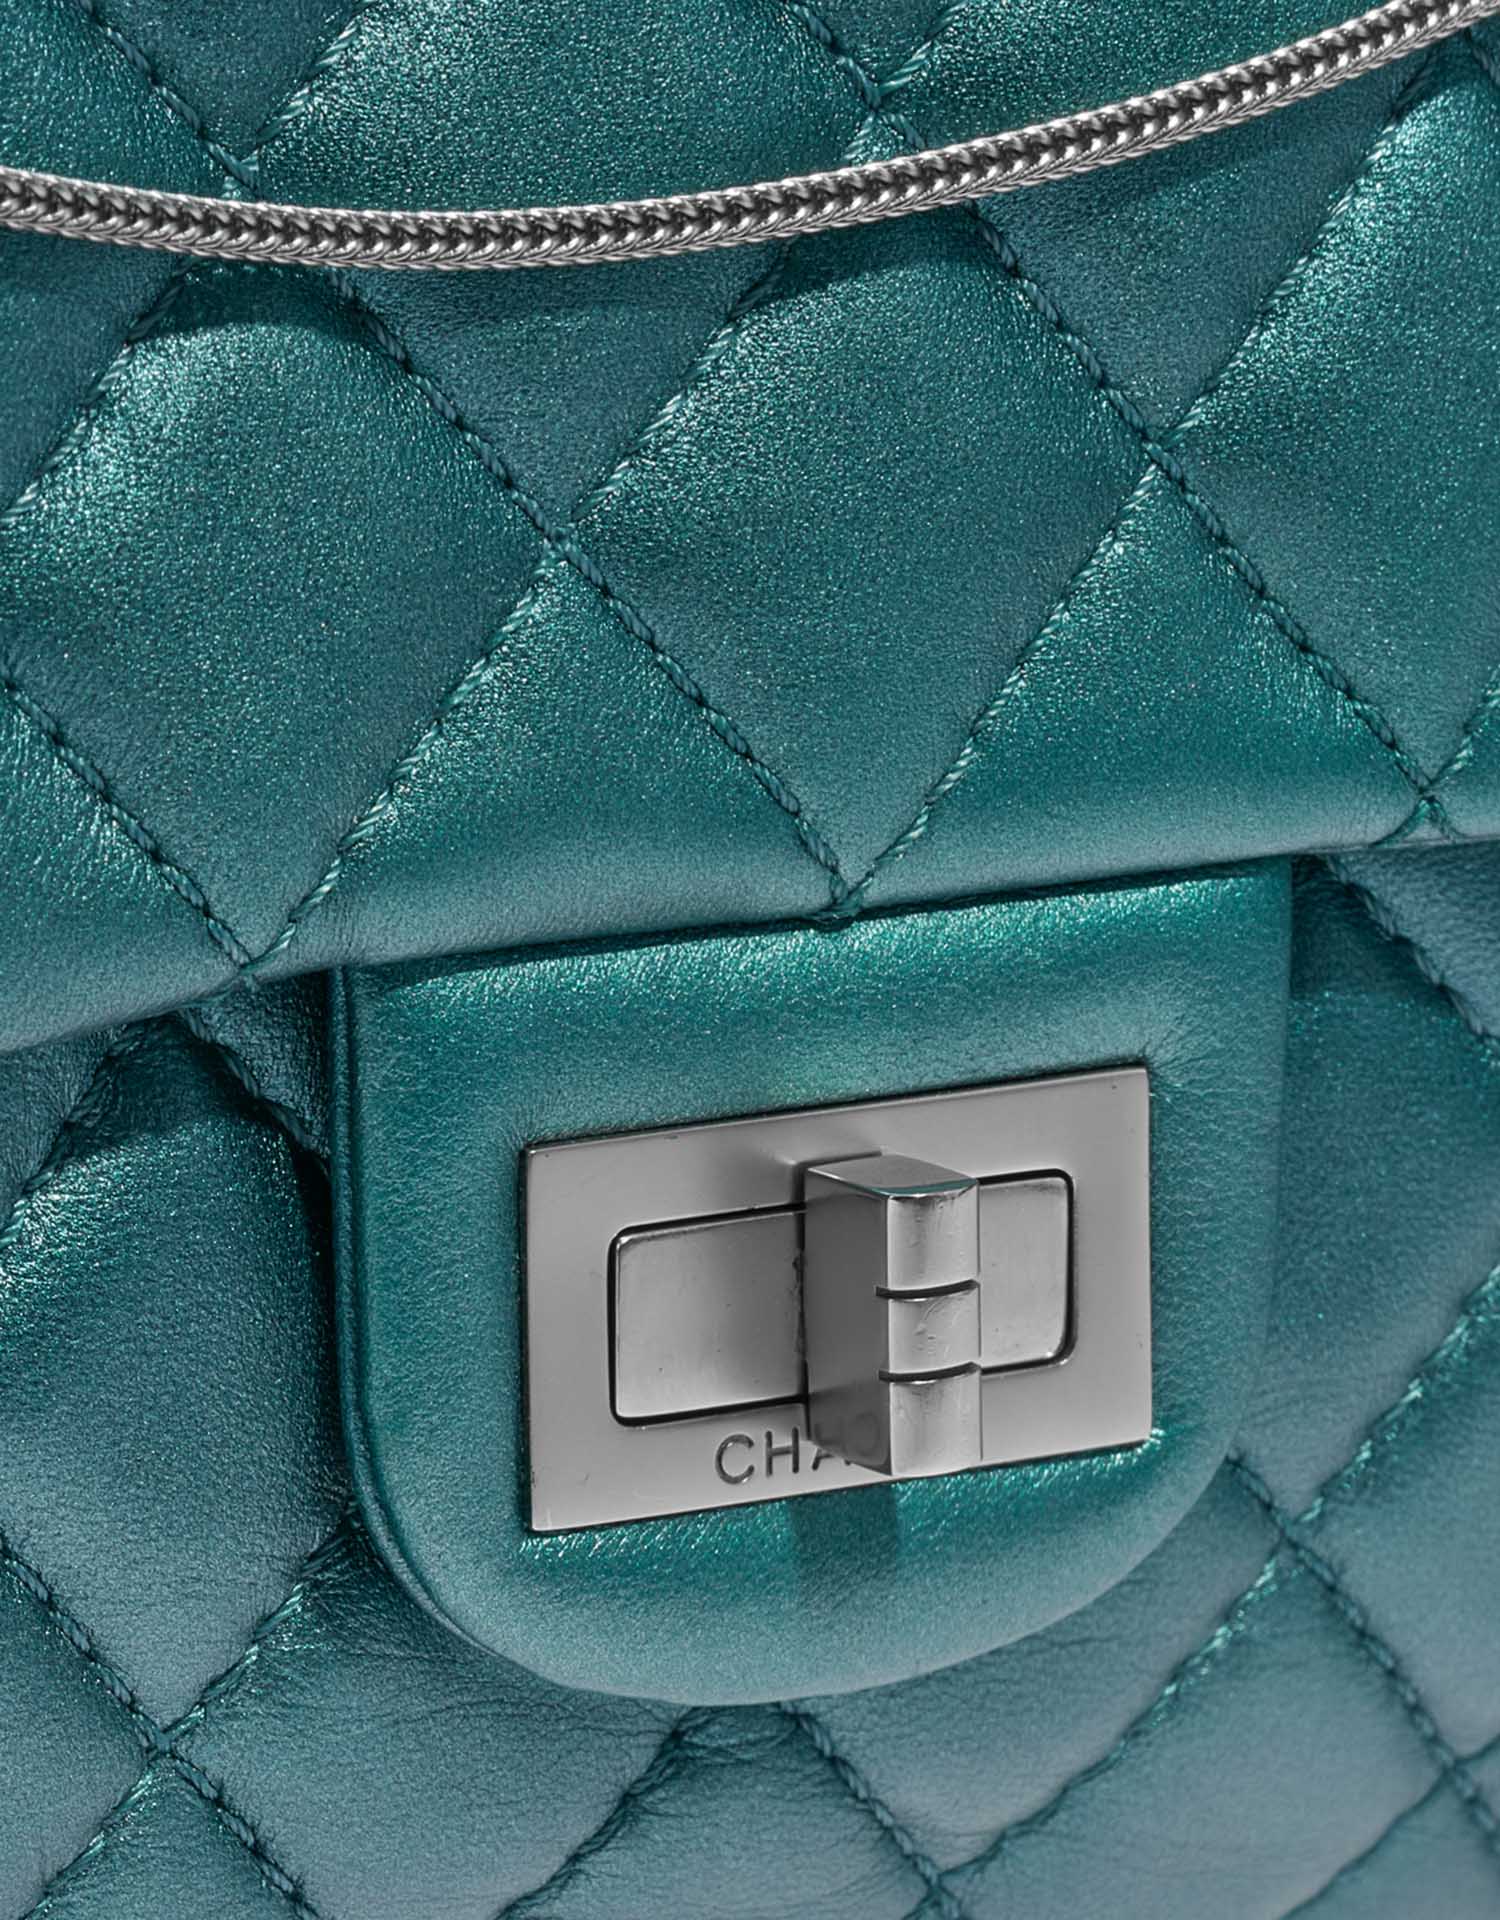 Sac Chanel d'occasion 2.55 Reissue 226 Lamb Metallic Blue Blue Closing System | Vendez votre sac de créateur sur Saclab.com